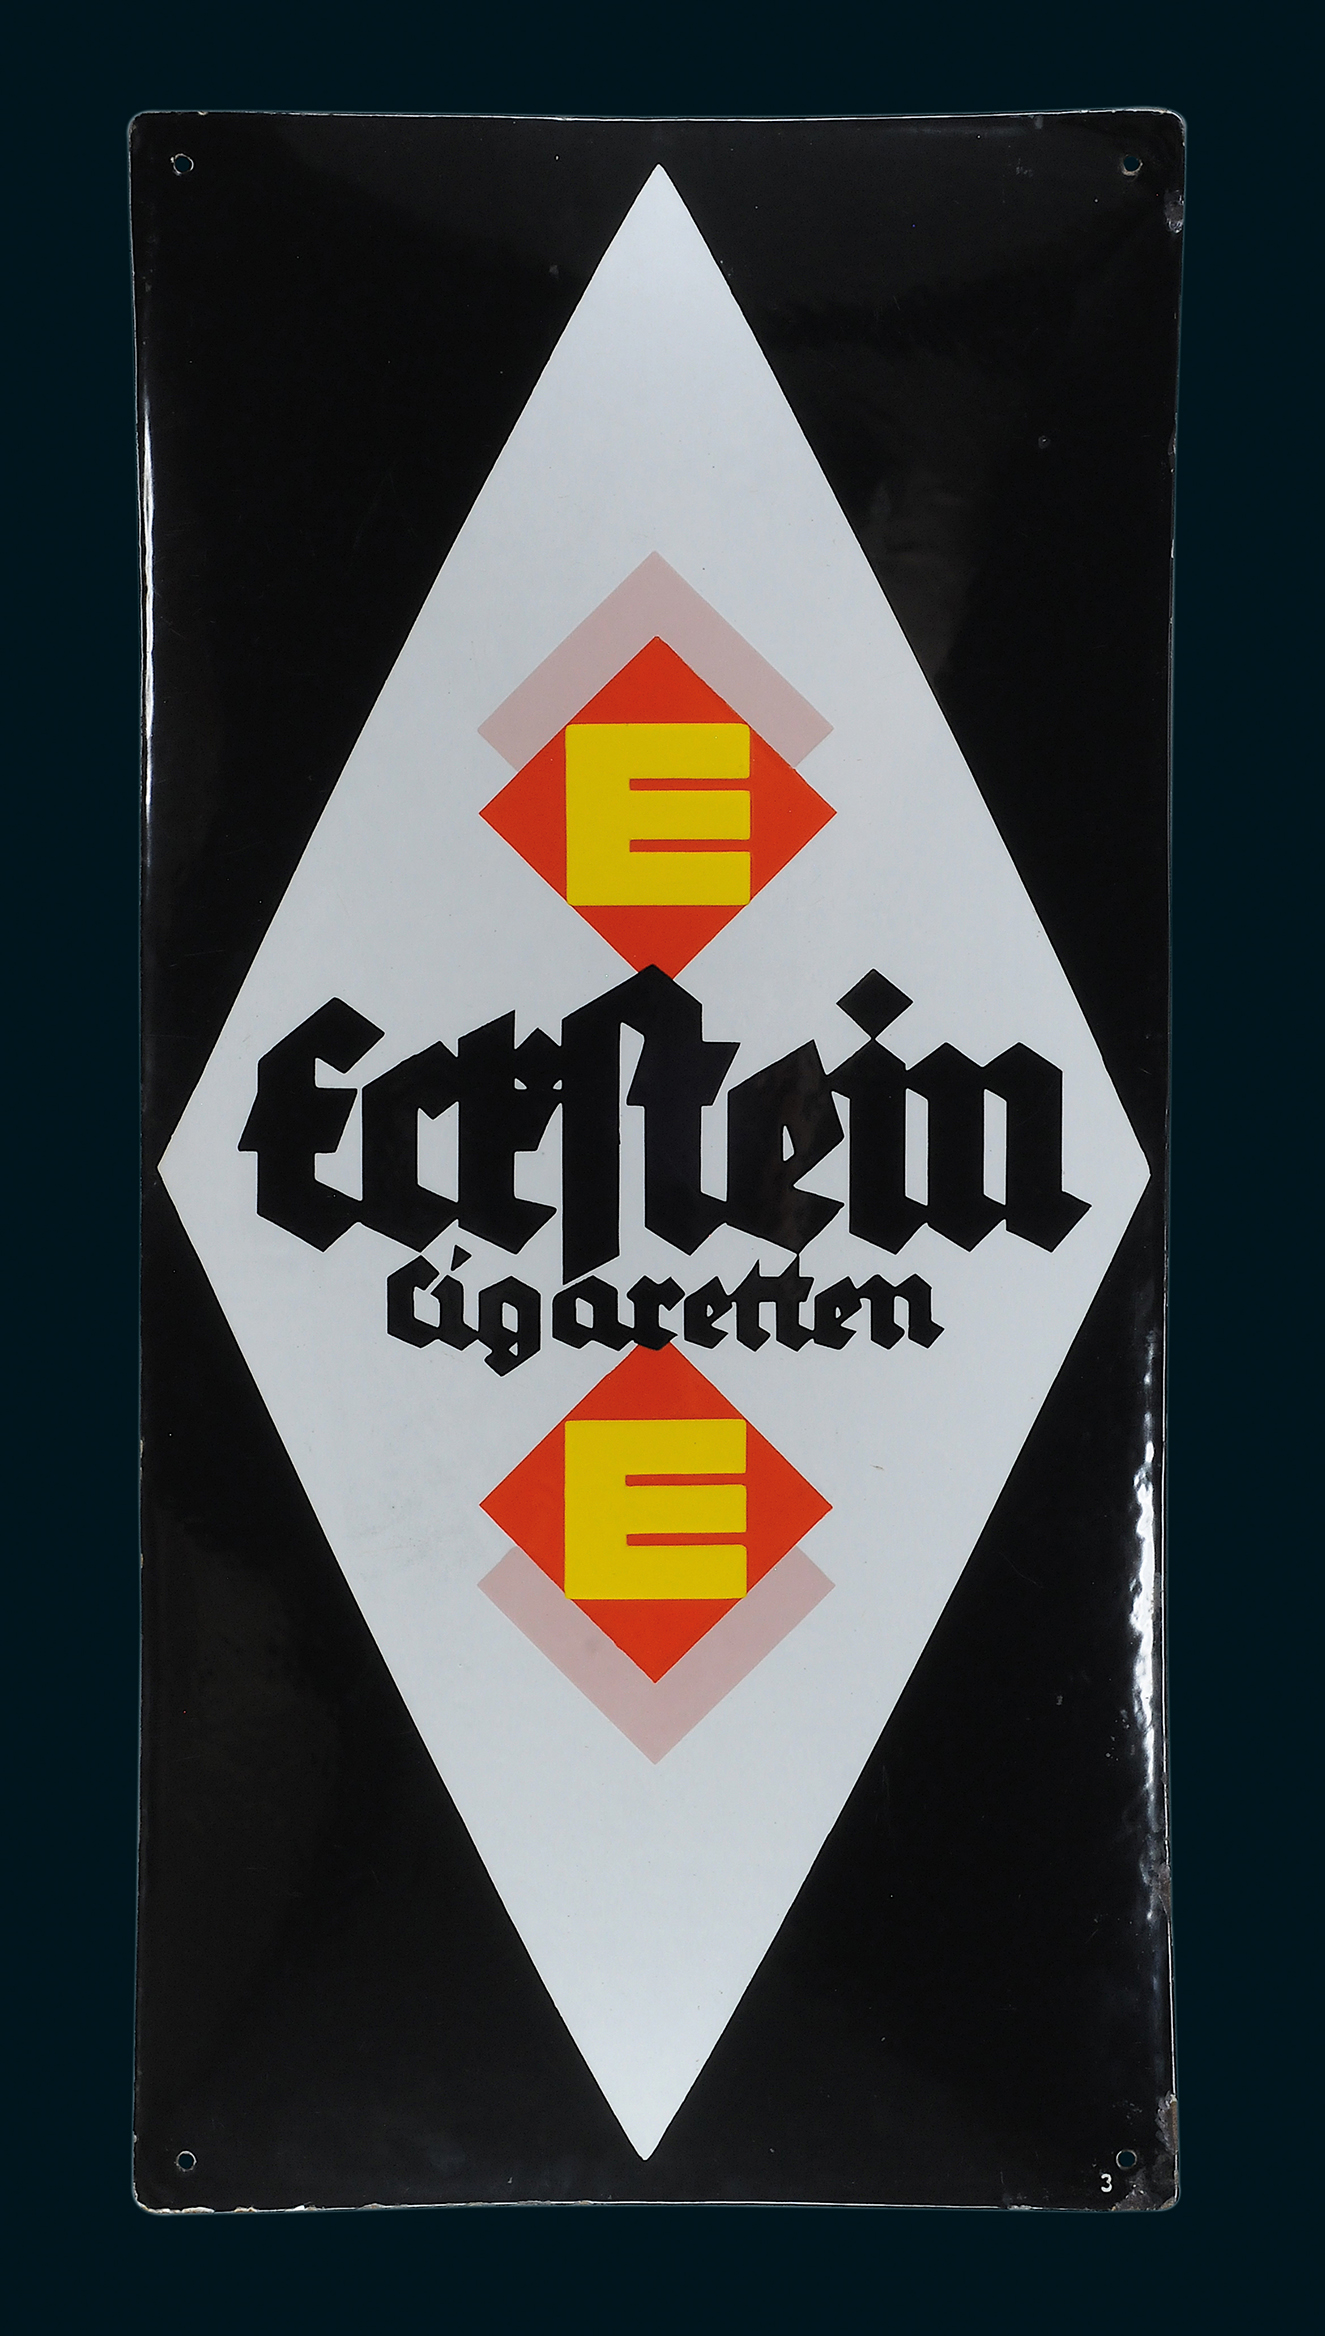 Eckstein Cigaretten